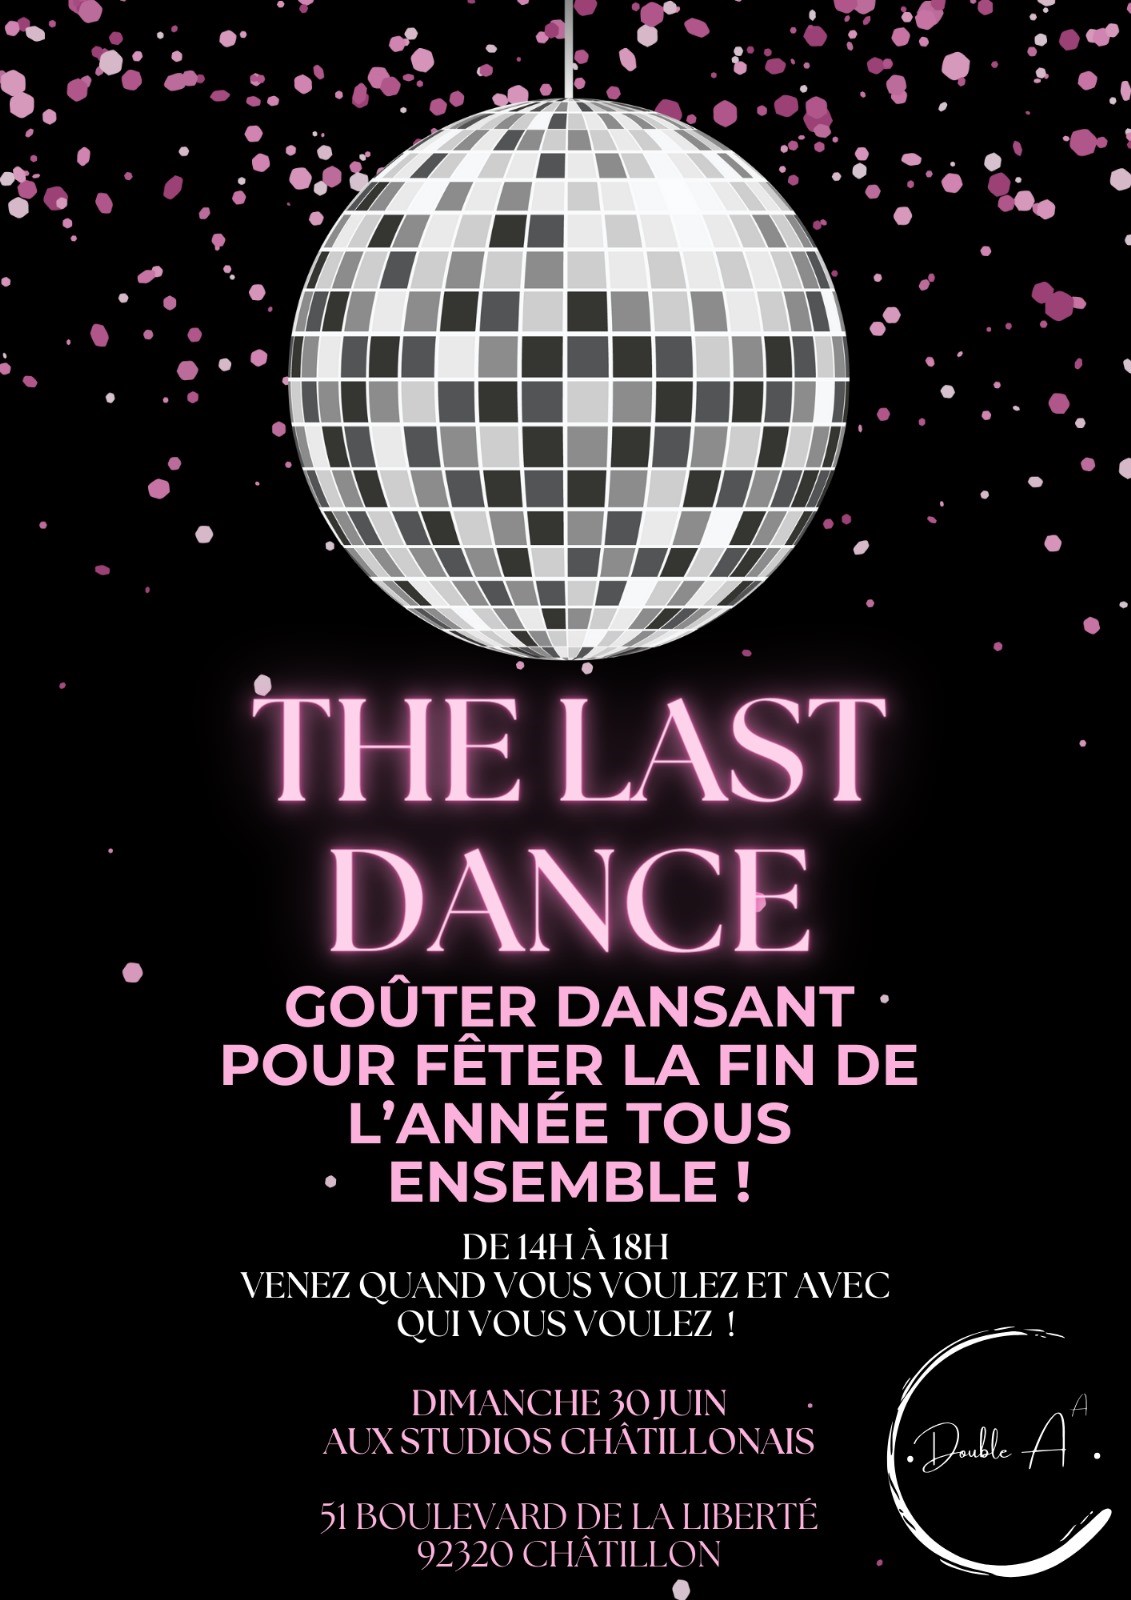 The Last Danse goûter dansant organisé par l'association Double A à Châtillon